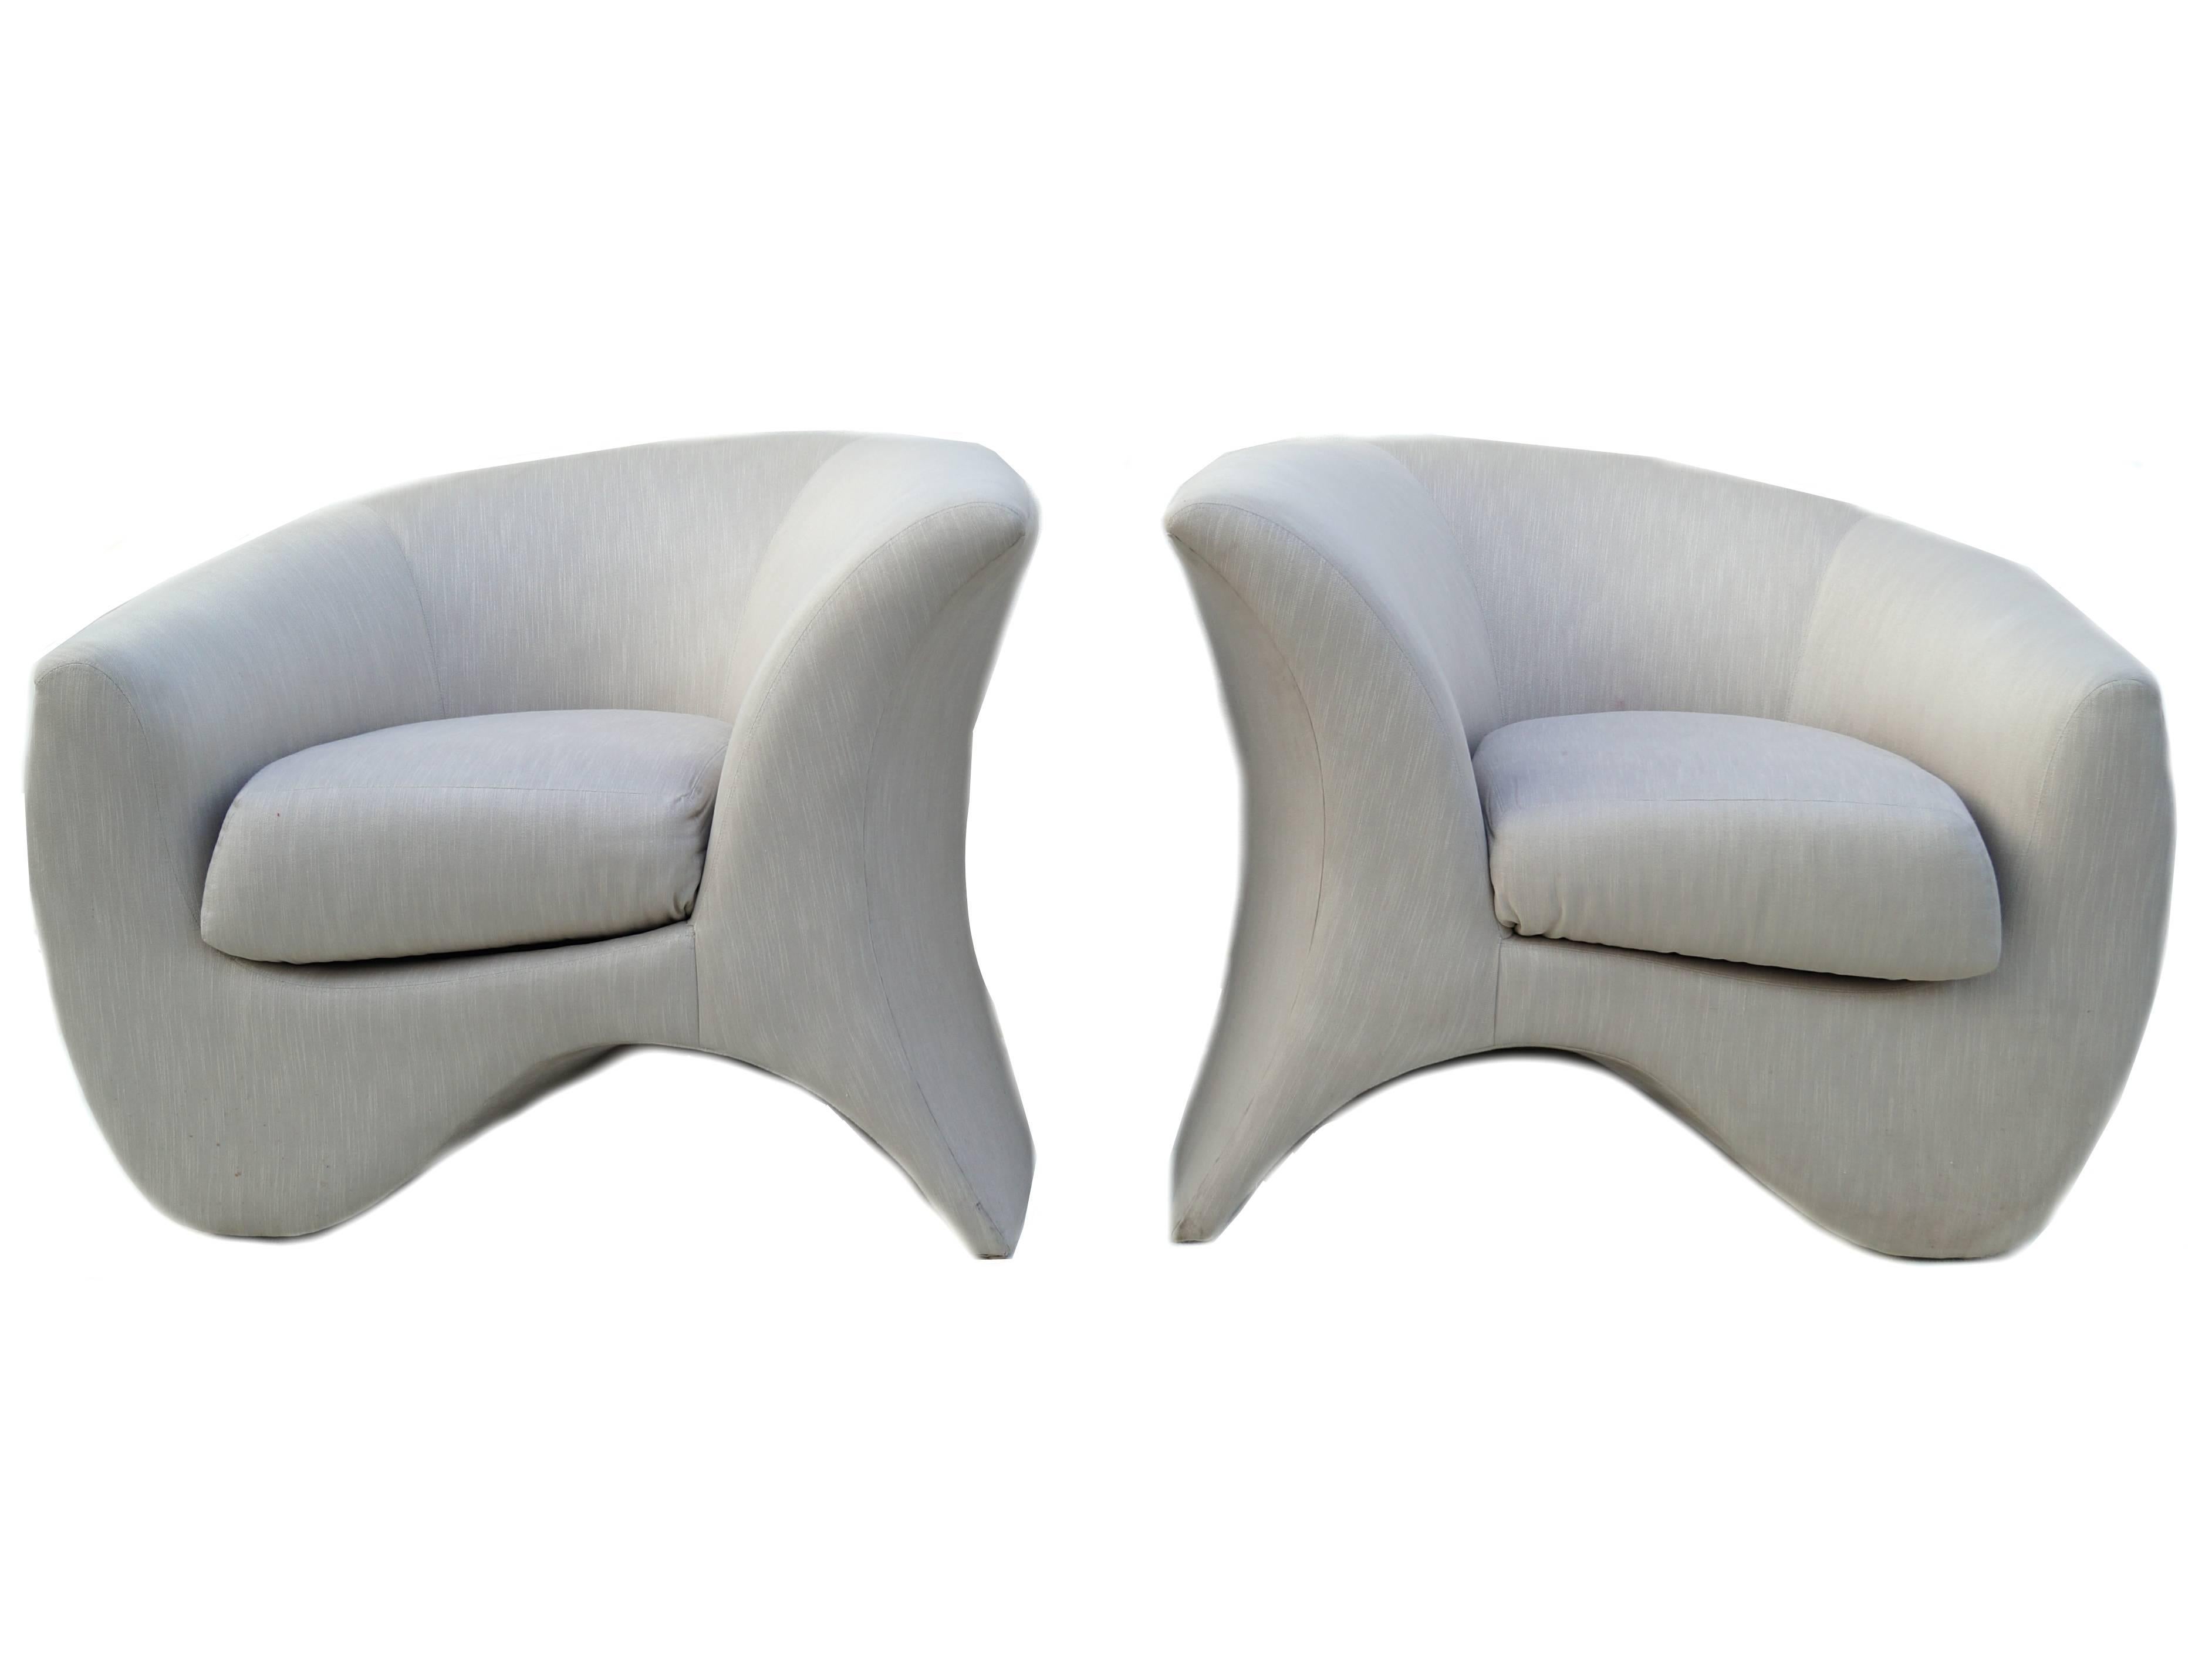 Pair of Vladimir Kagan sculptural lounge club chairs. The last photo shows the Hurricane chair in Kagan's book 